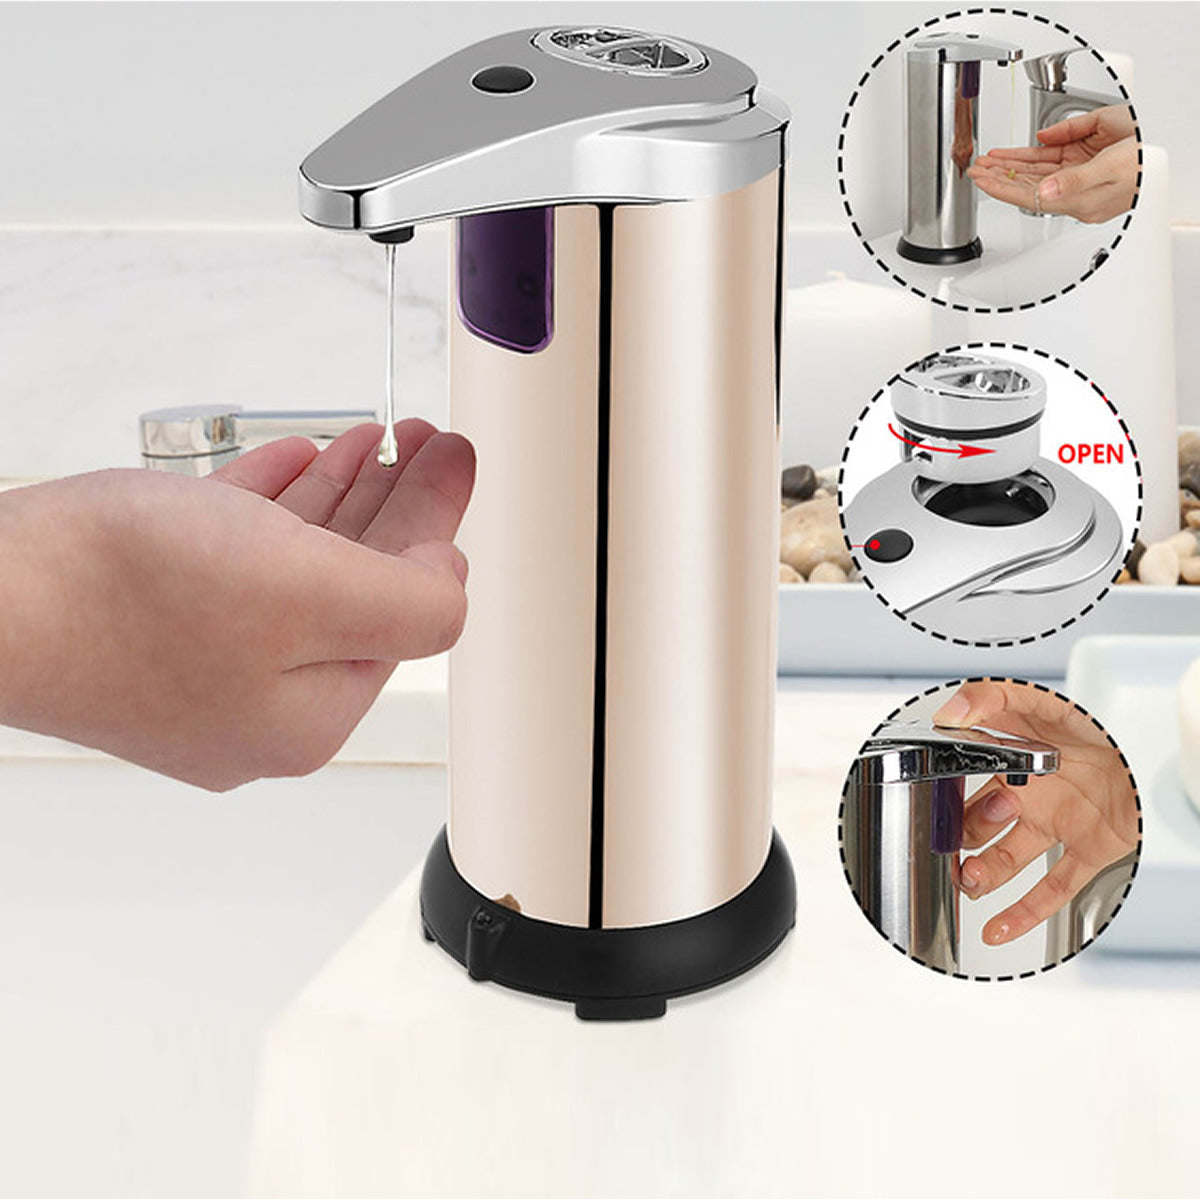 Auto Motion Smart Soap Dispenser